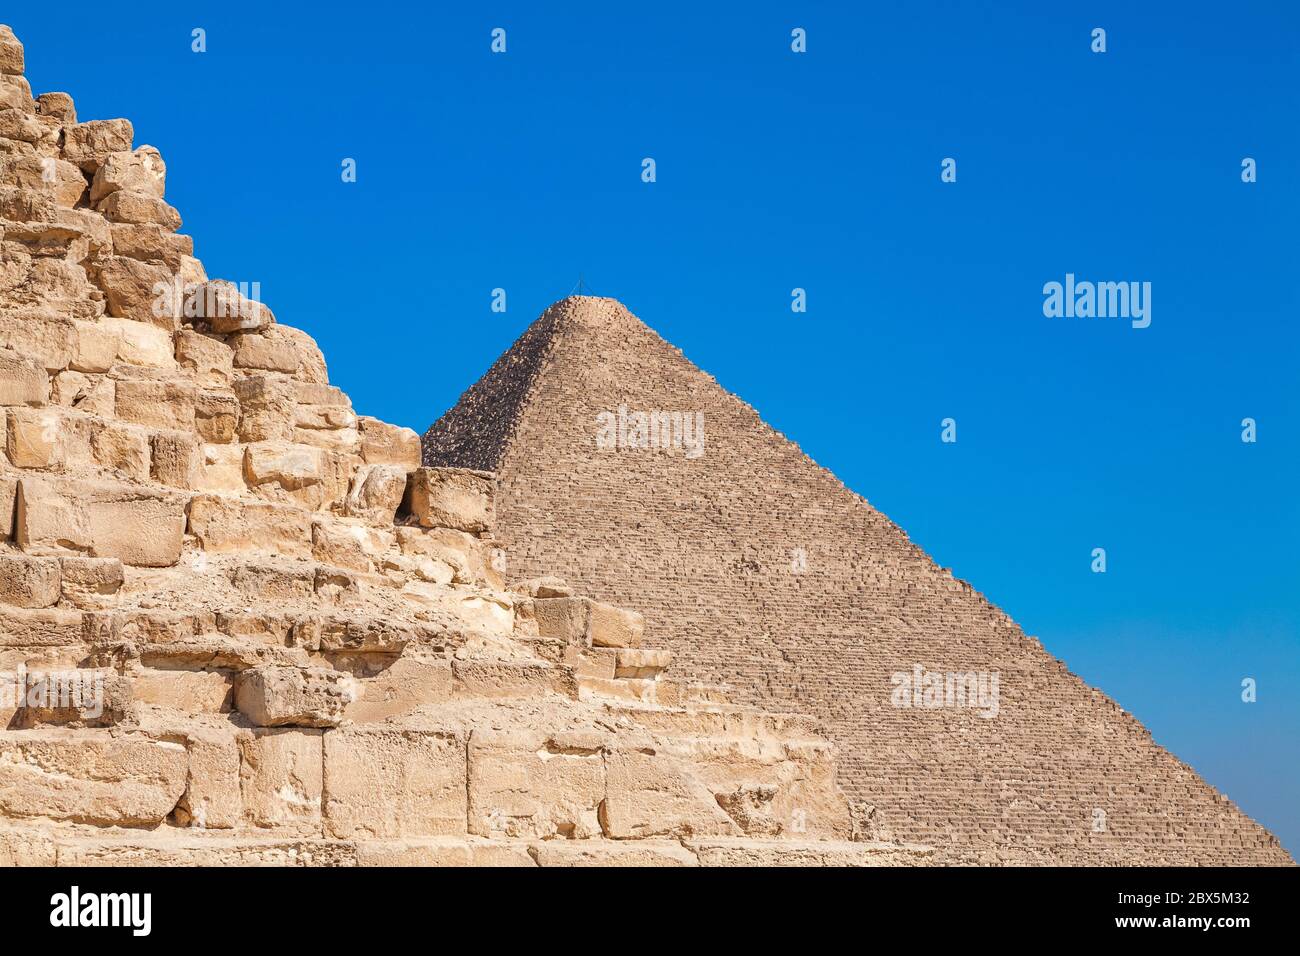 Die große Pyramide von Gizeh auch bekannt als die Pyramide von Khufu oder die Pyramide von Cheops, Gizeh Pyramidenkomplex, Ägypten Stockfoto